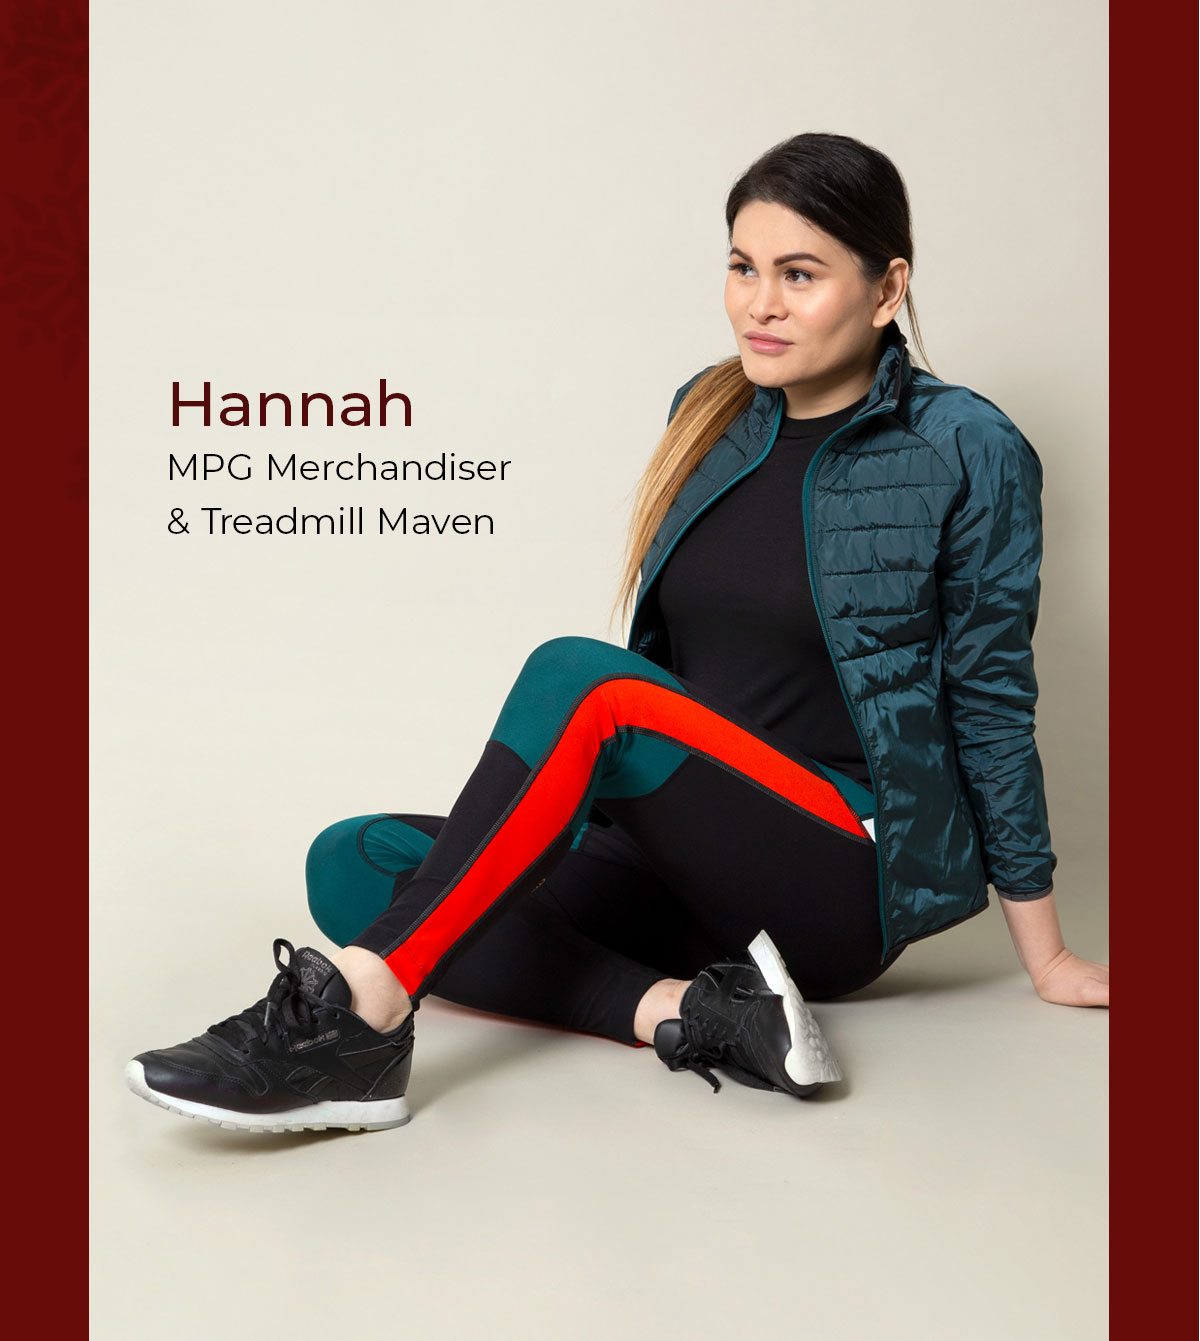 Featuring Hannah - MPG Merchandiser& Treadmill Maven